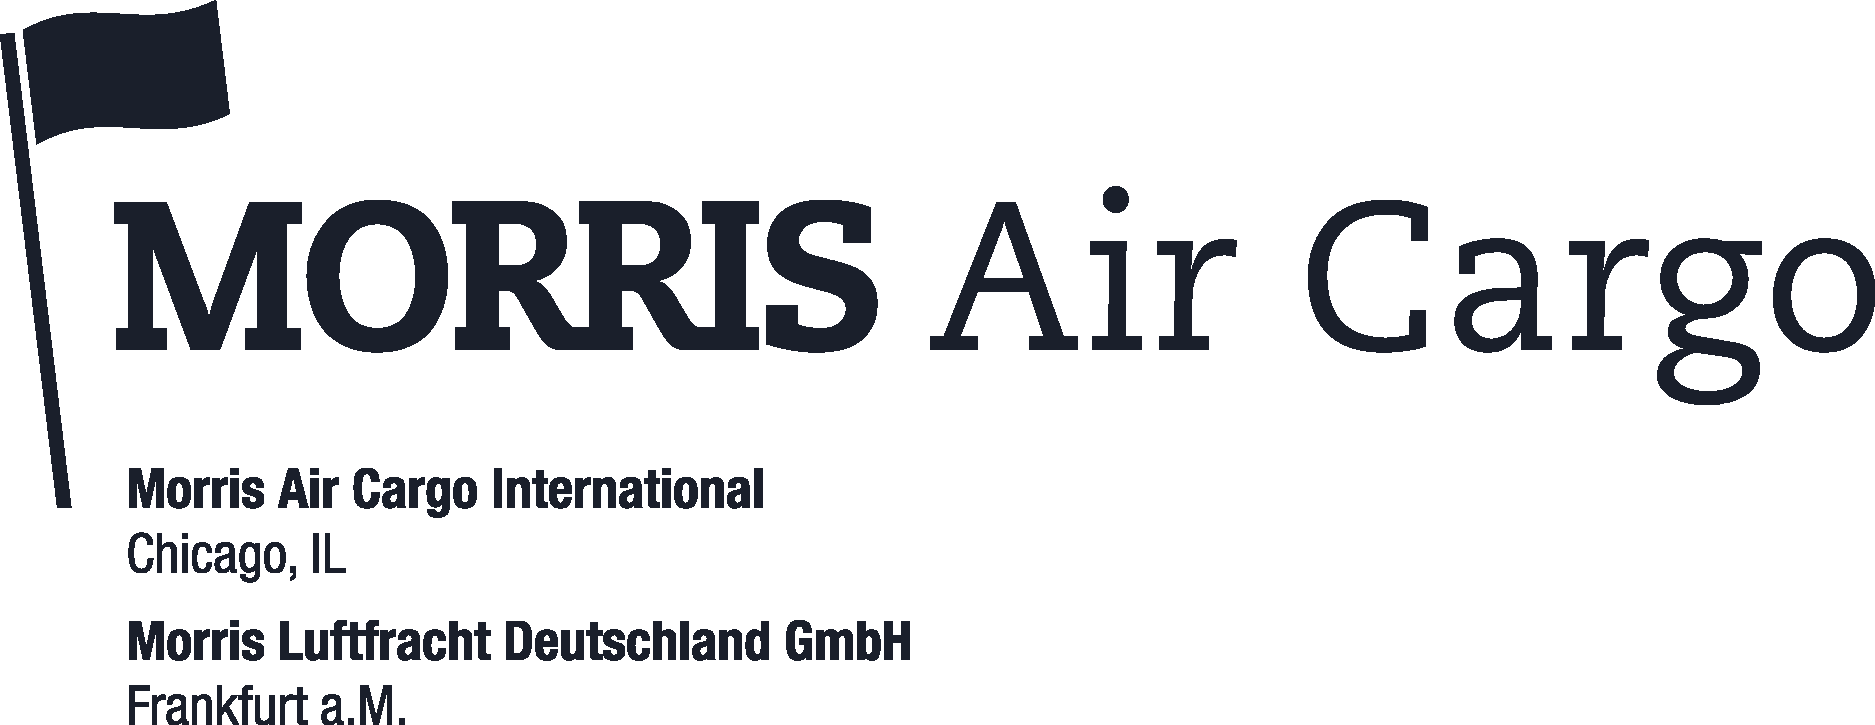 Morris Air Cargo Logo Vector